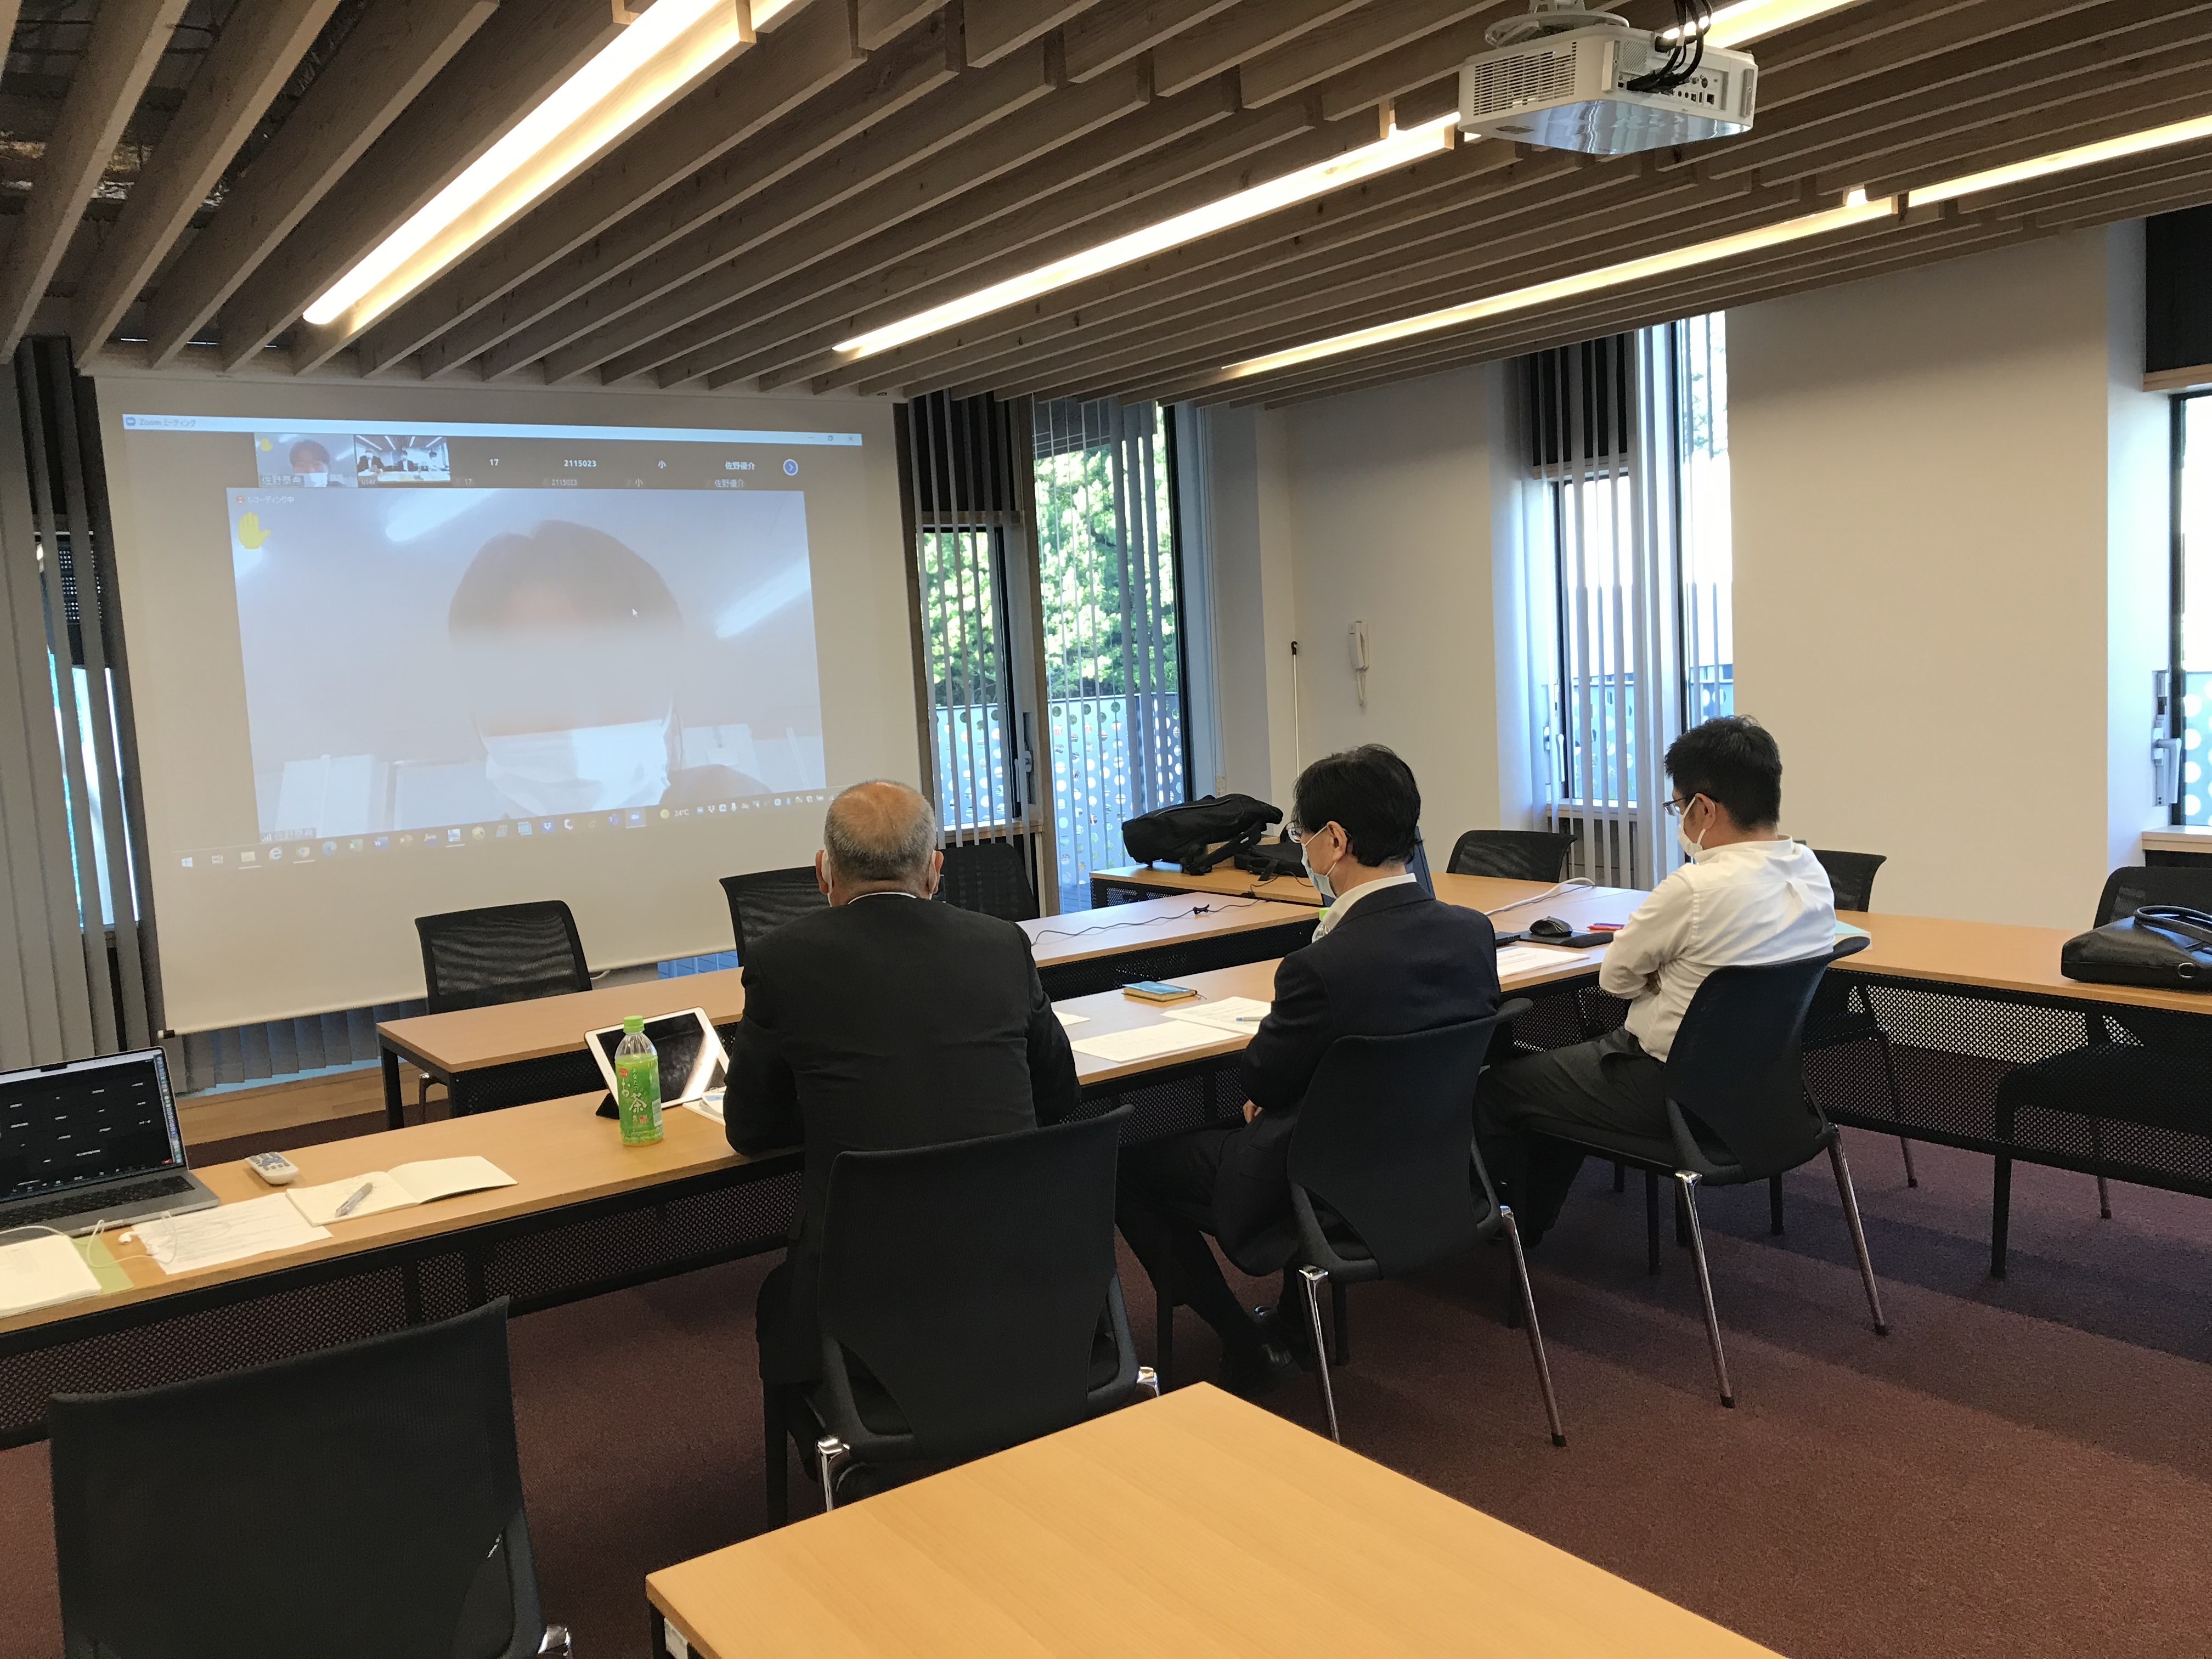 学校法人 静岡理工科大学 建築学科にて当社社員が「ゼネコンの仕事について」をテーマに実践技術者講座を実施いたしました。